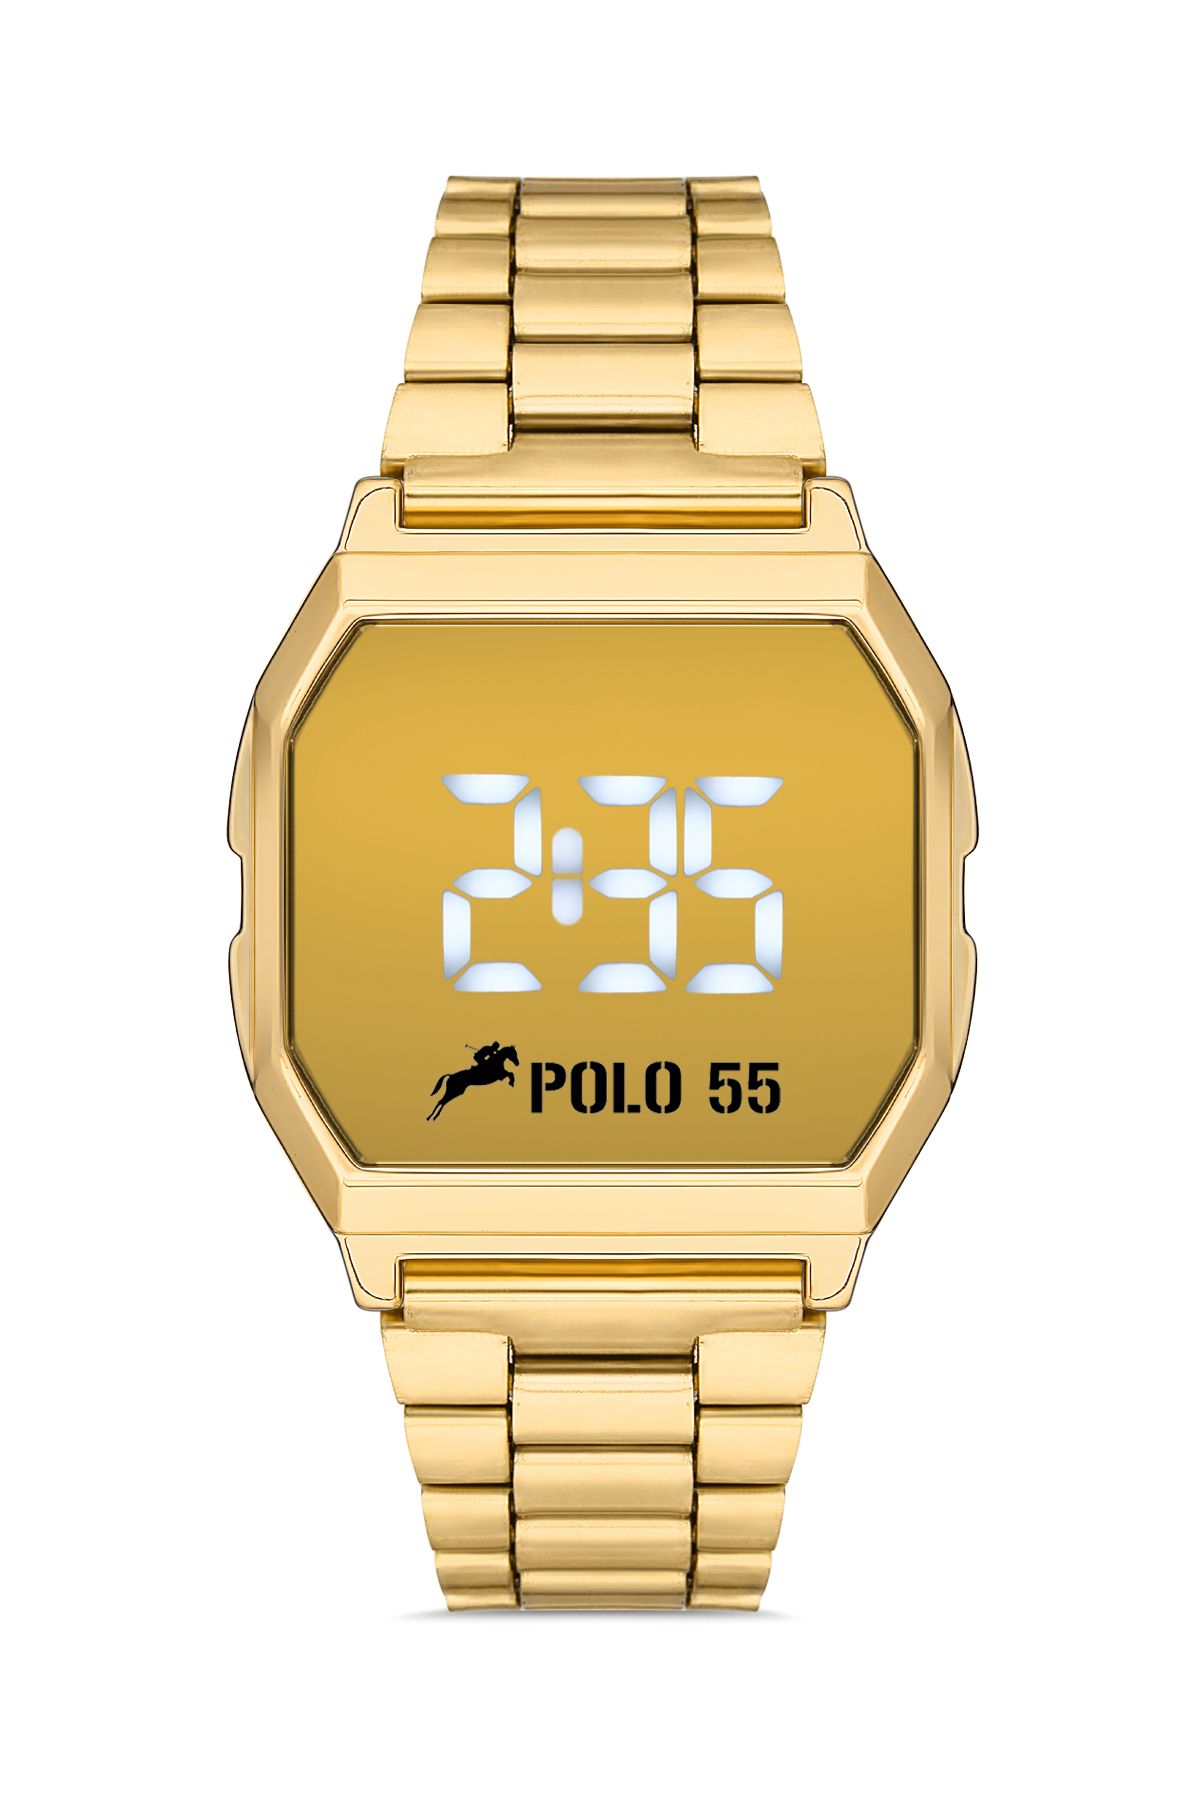 Polo55 Gold Zamansız Tasarım Dokunmatik Dijital Metal Kordon Retro Kadın Kol Saati